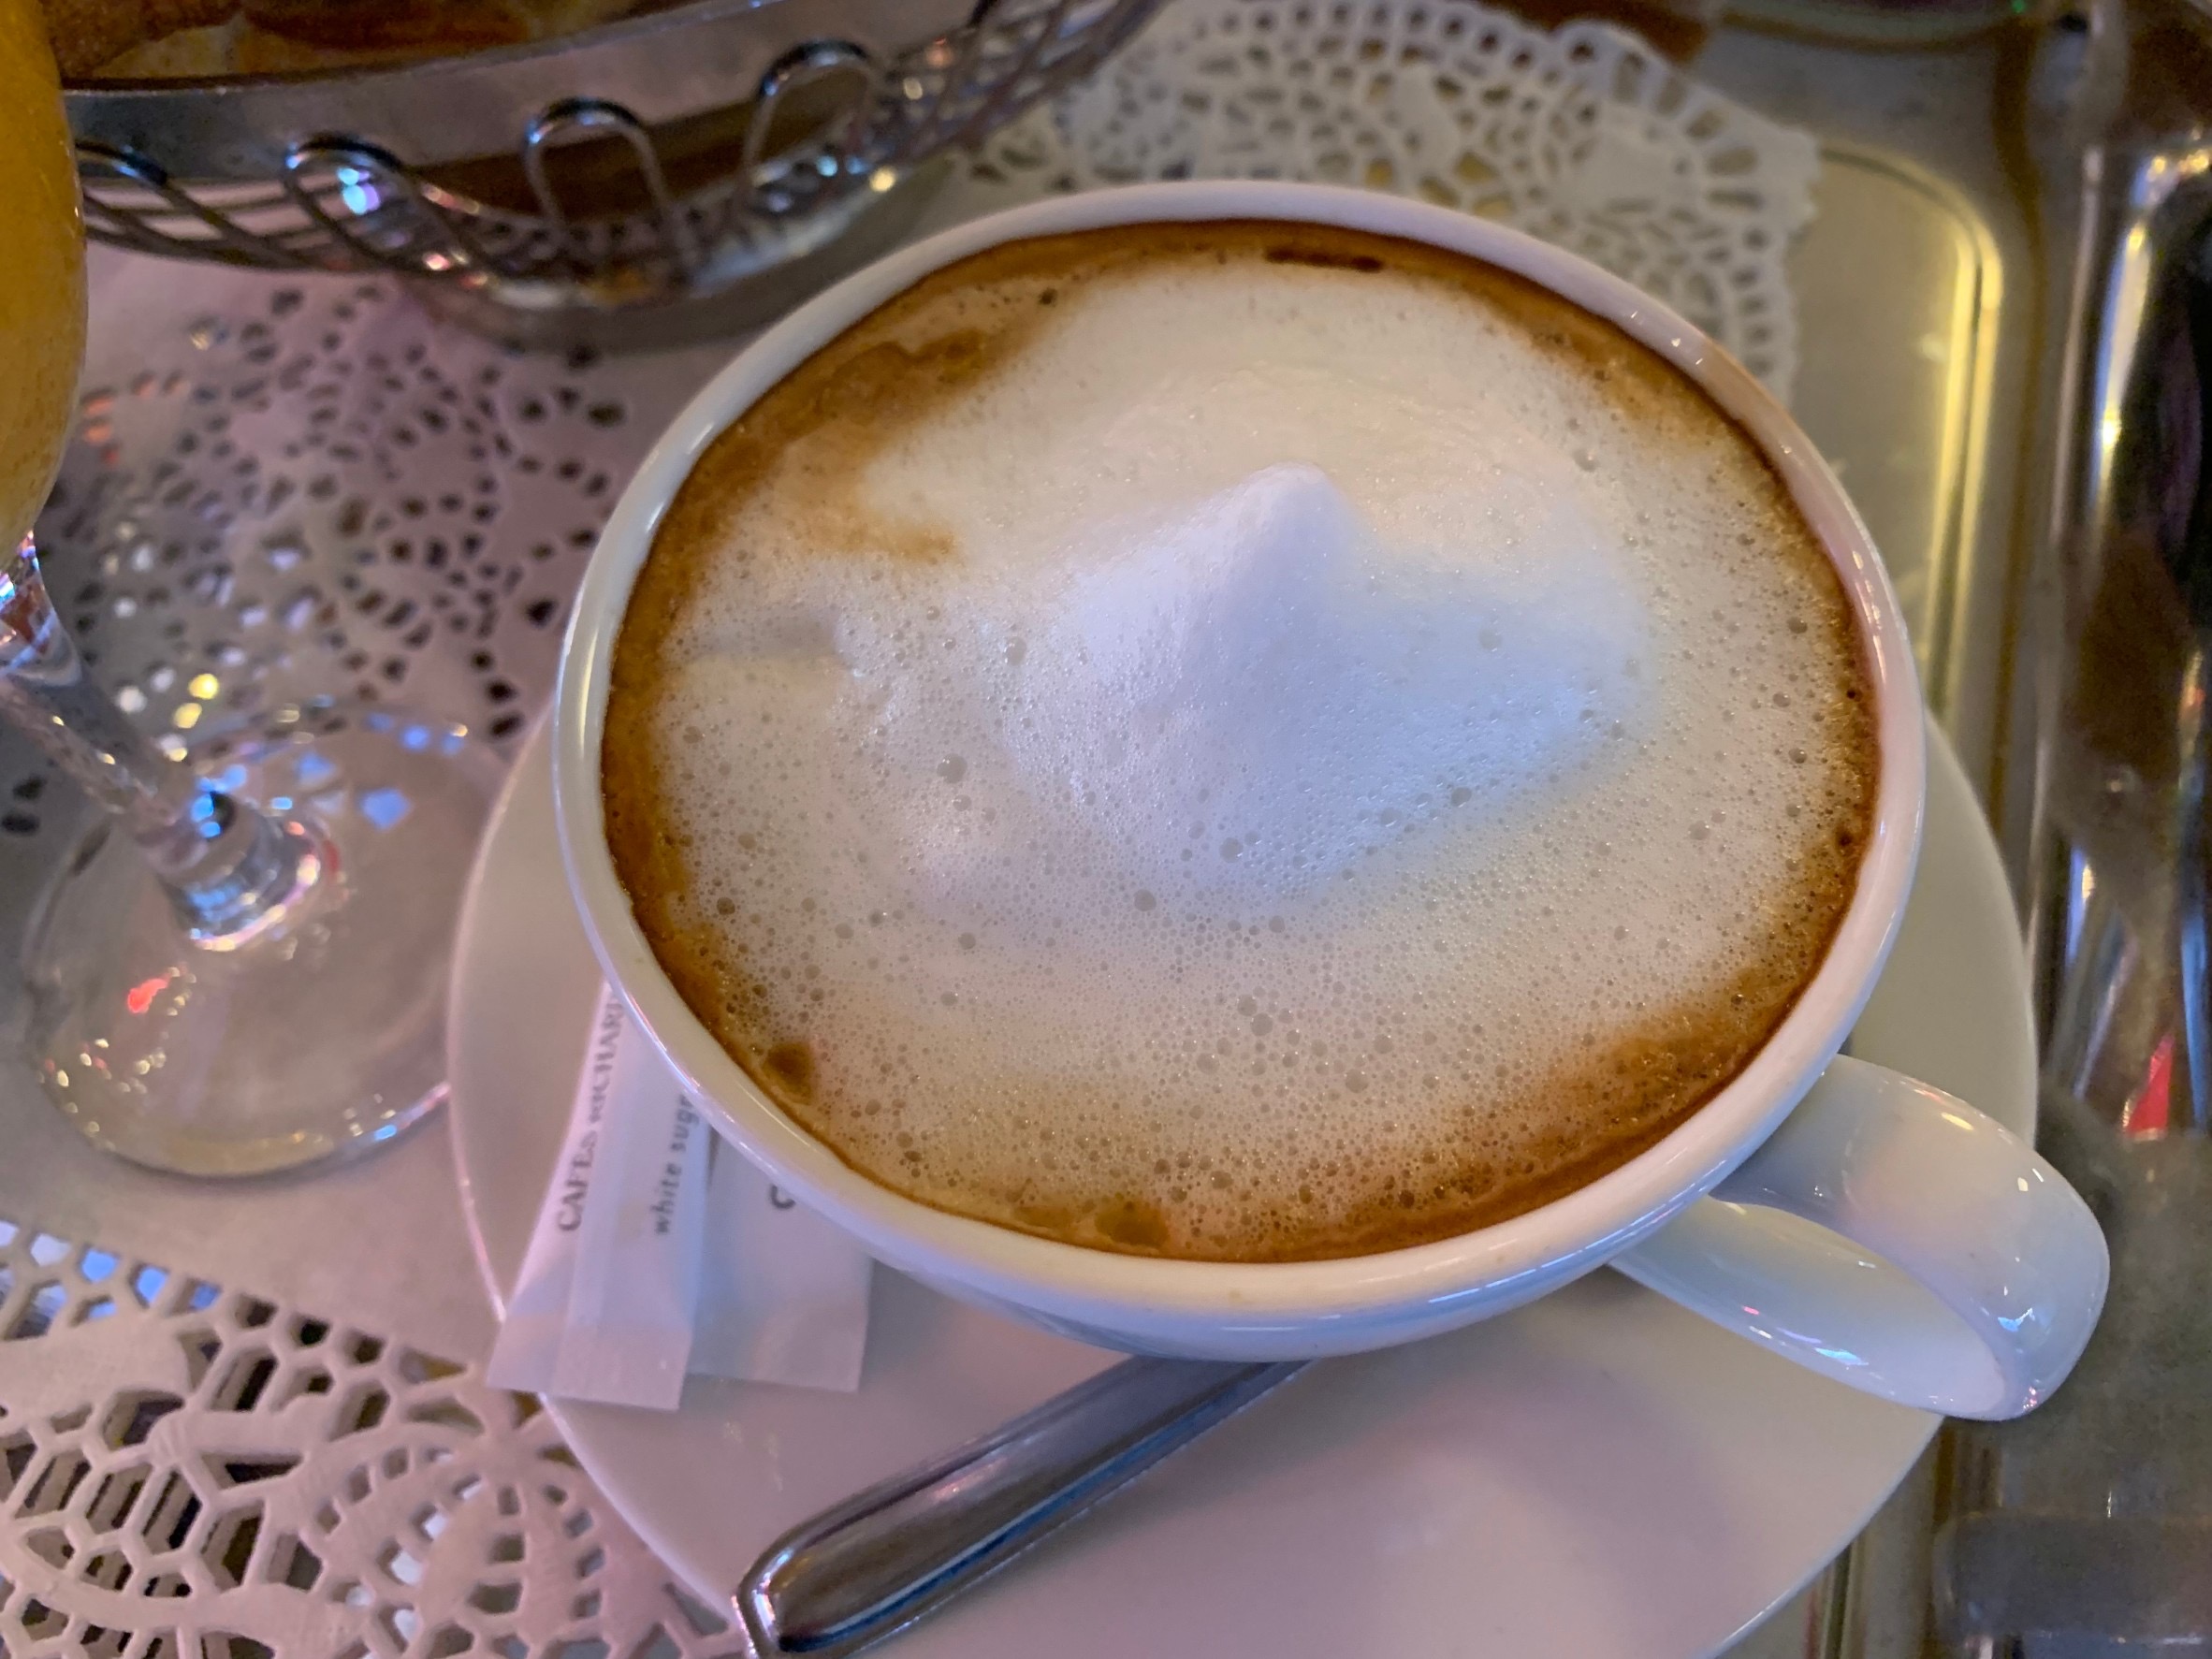 退屈カフェ日記「朝の一杯のコーヒーでフランスが動き出す。パリのカフェ文化＼(^o^)／」